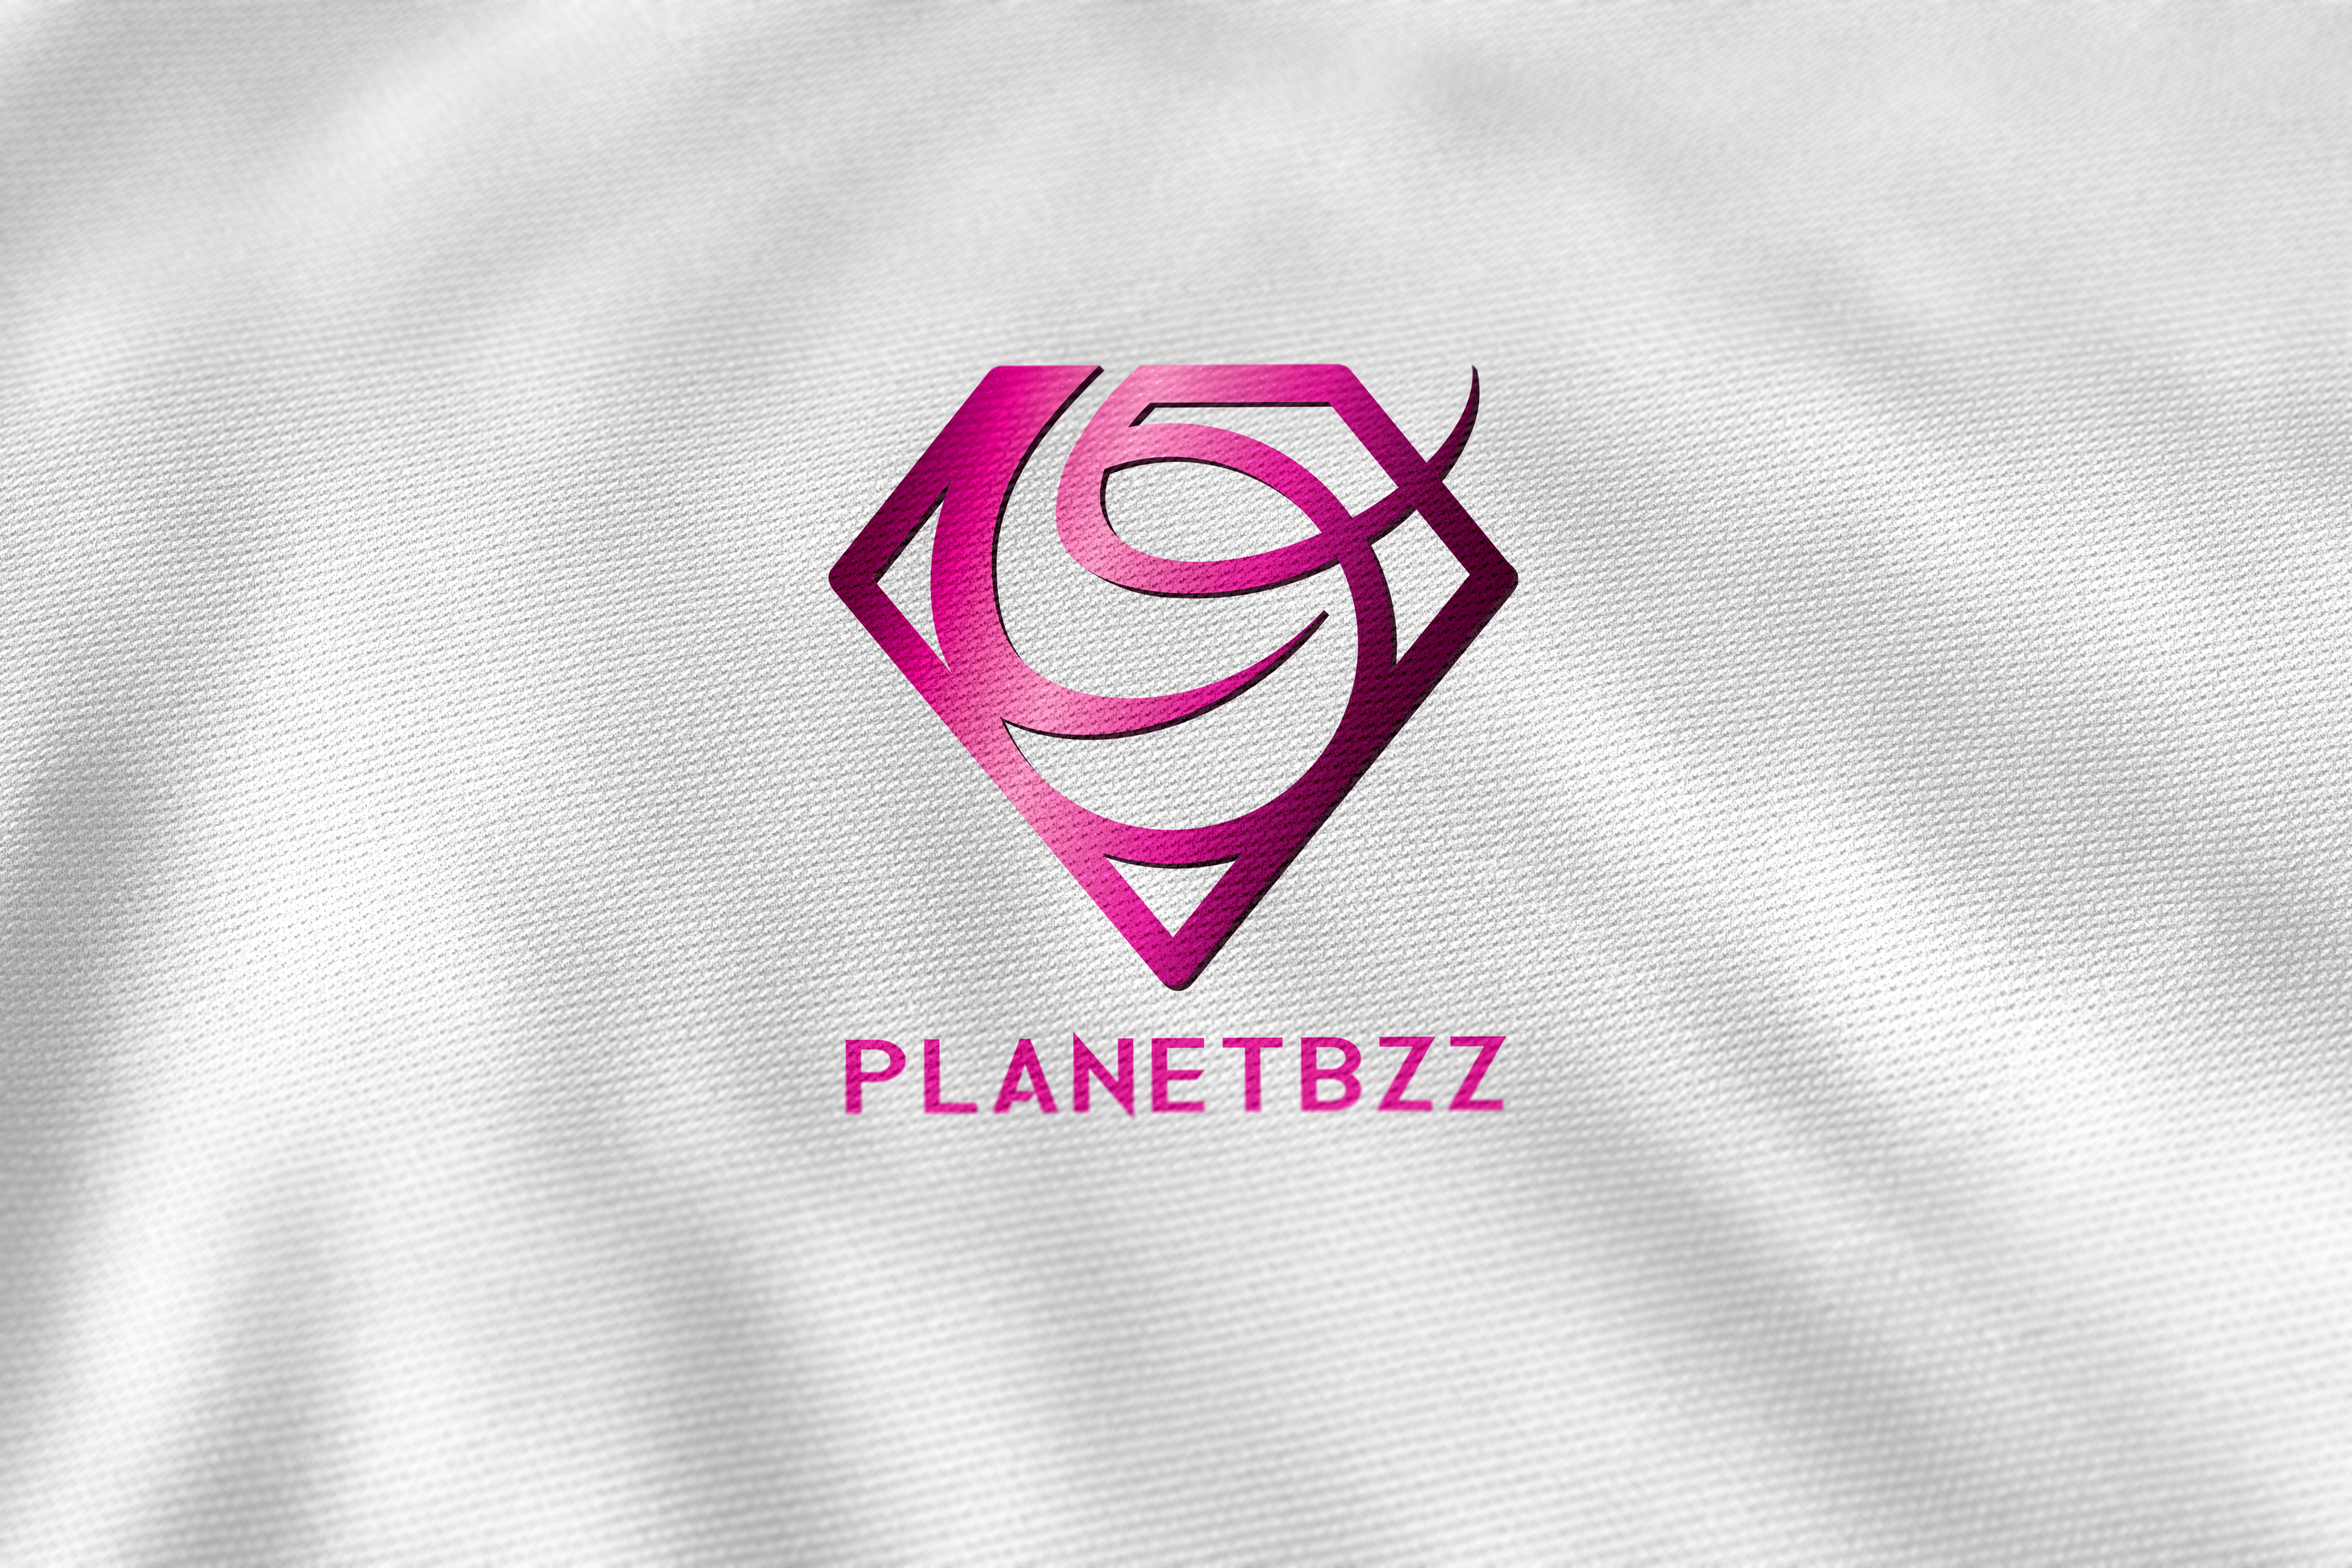 PlanetBzz Logo